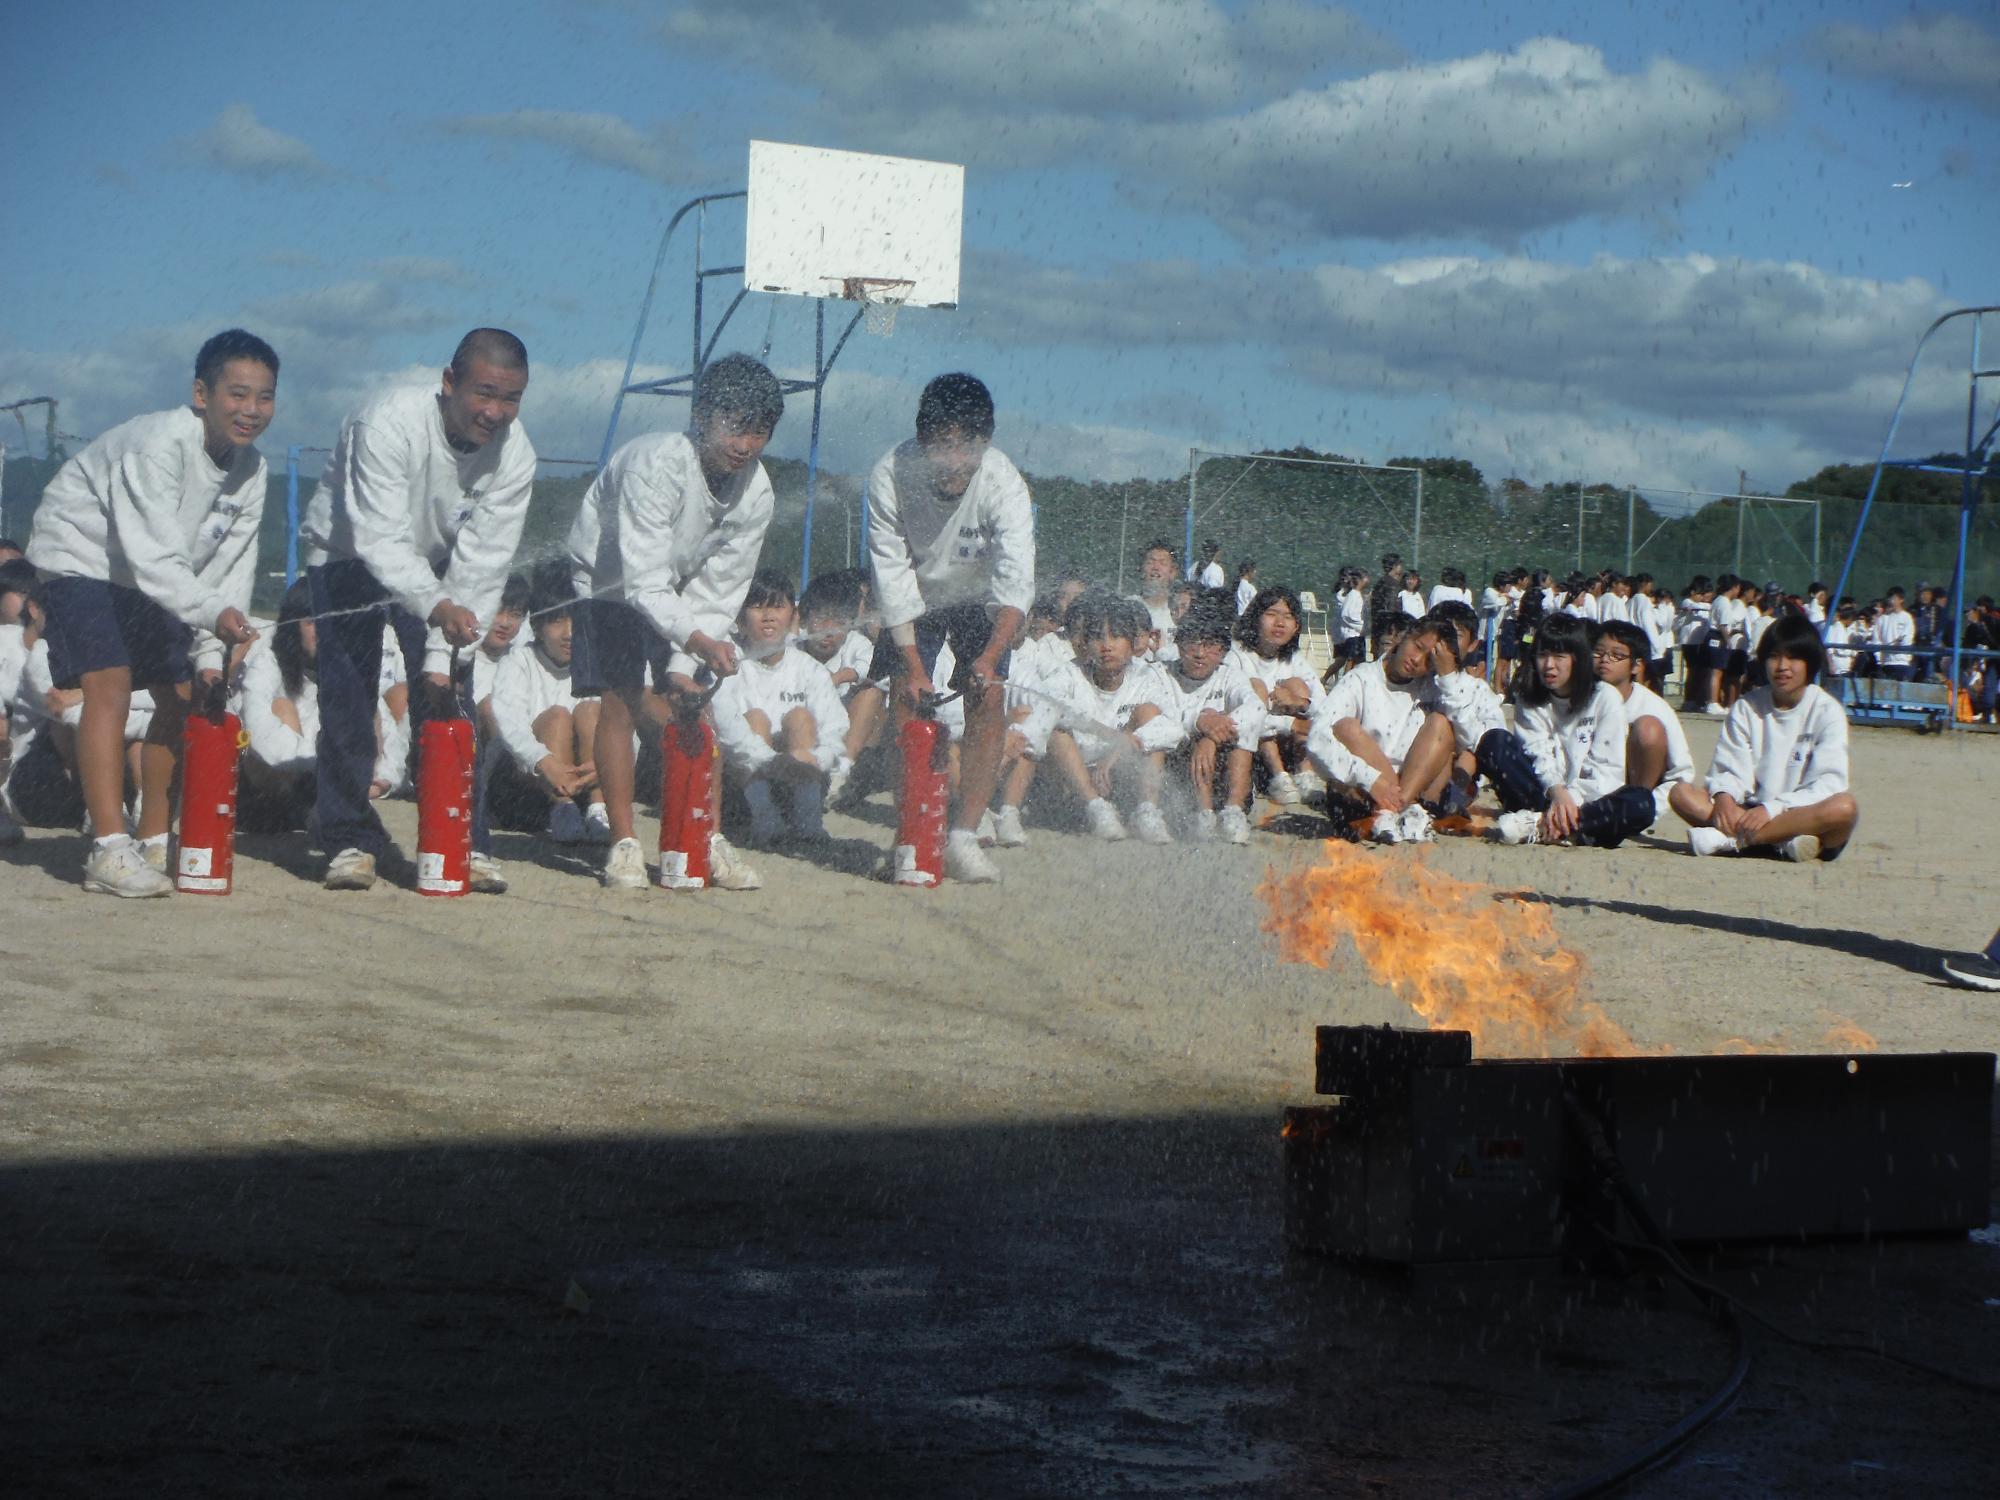 水消火器を使って火を消す中学生